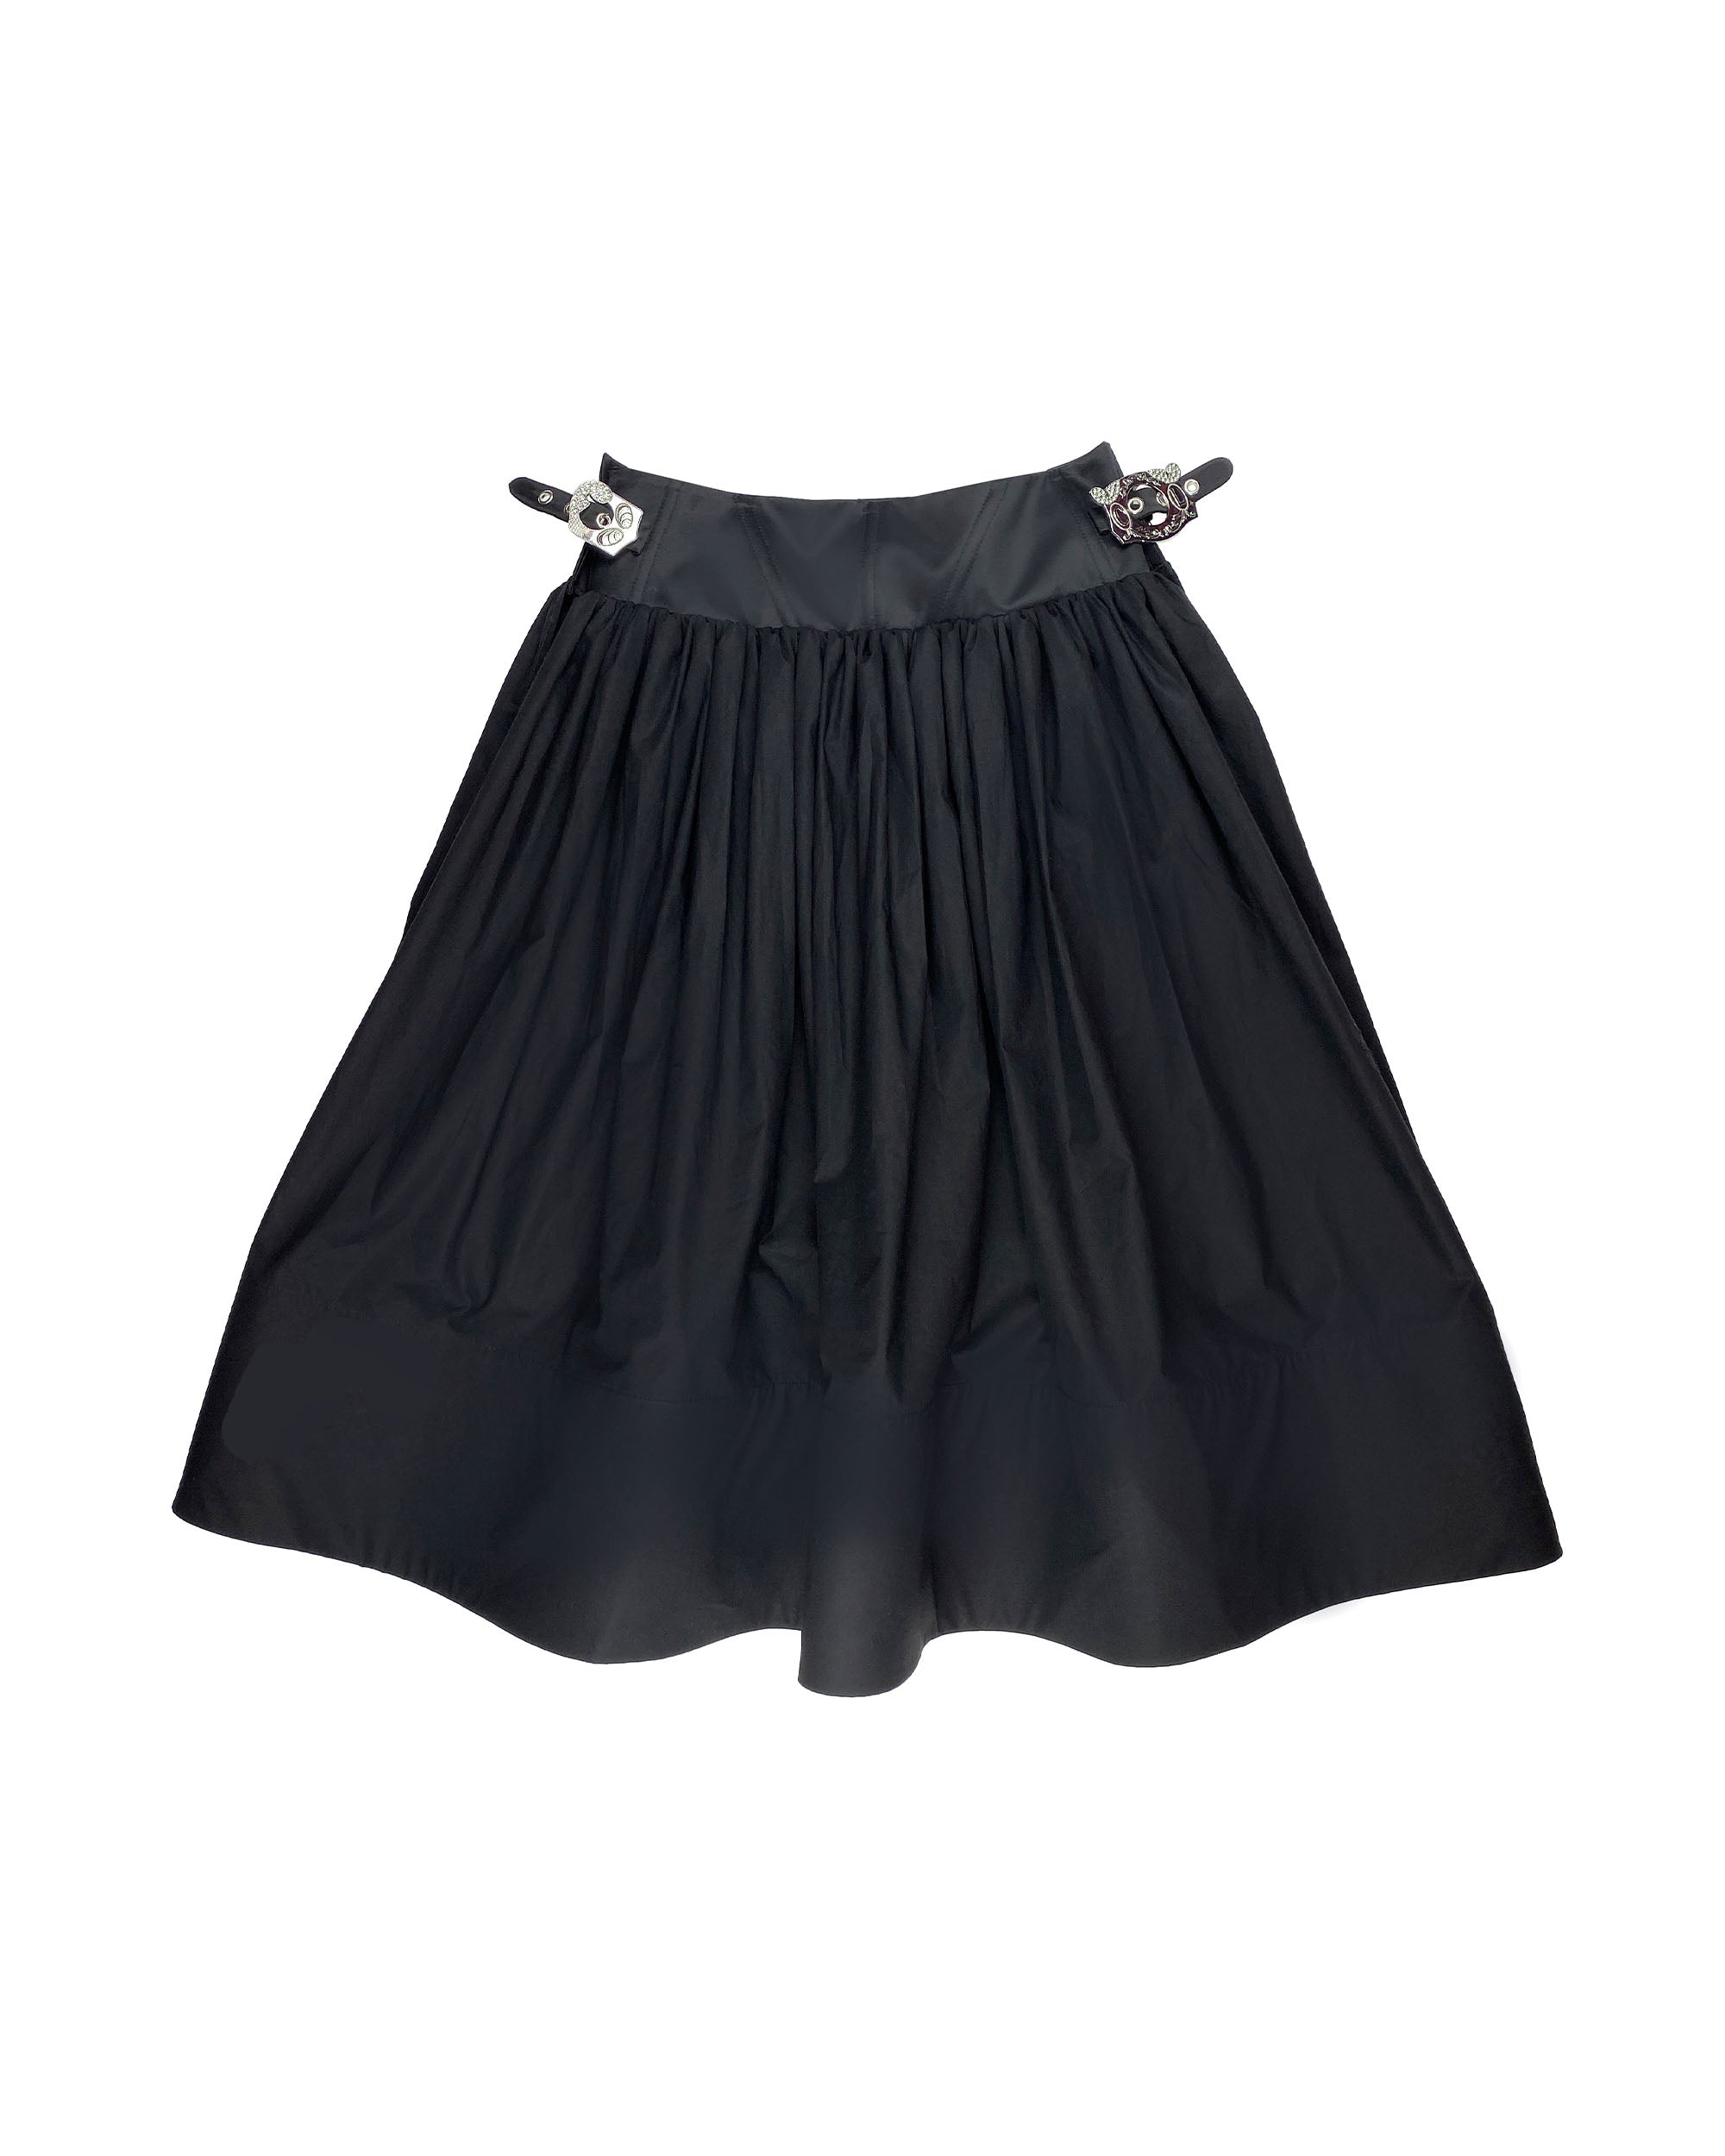 Foray Skirt - Black / Black